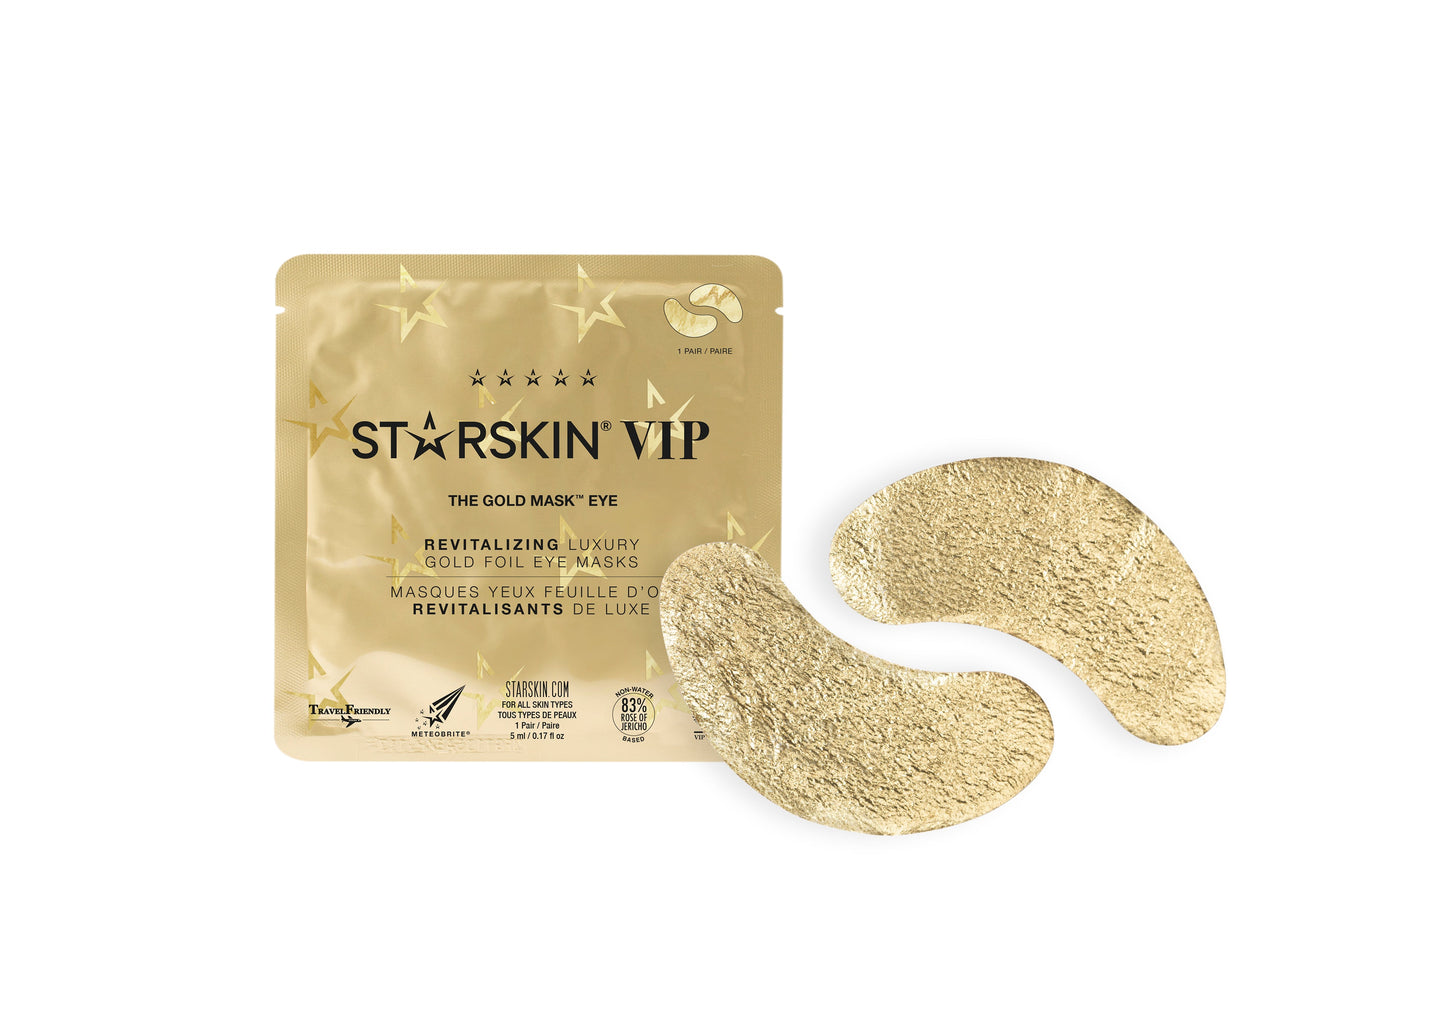 STARSKIN VIP THE GOLD MASK™ Eye Mask, Revitalizing Luxury Gold Foil Eye Mask